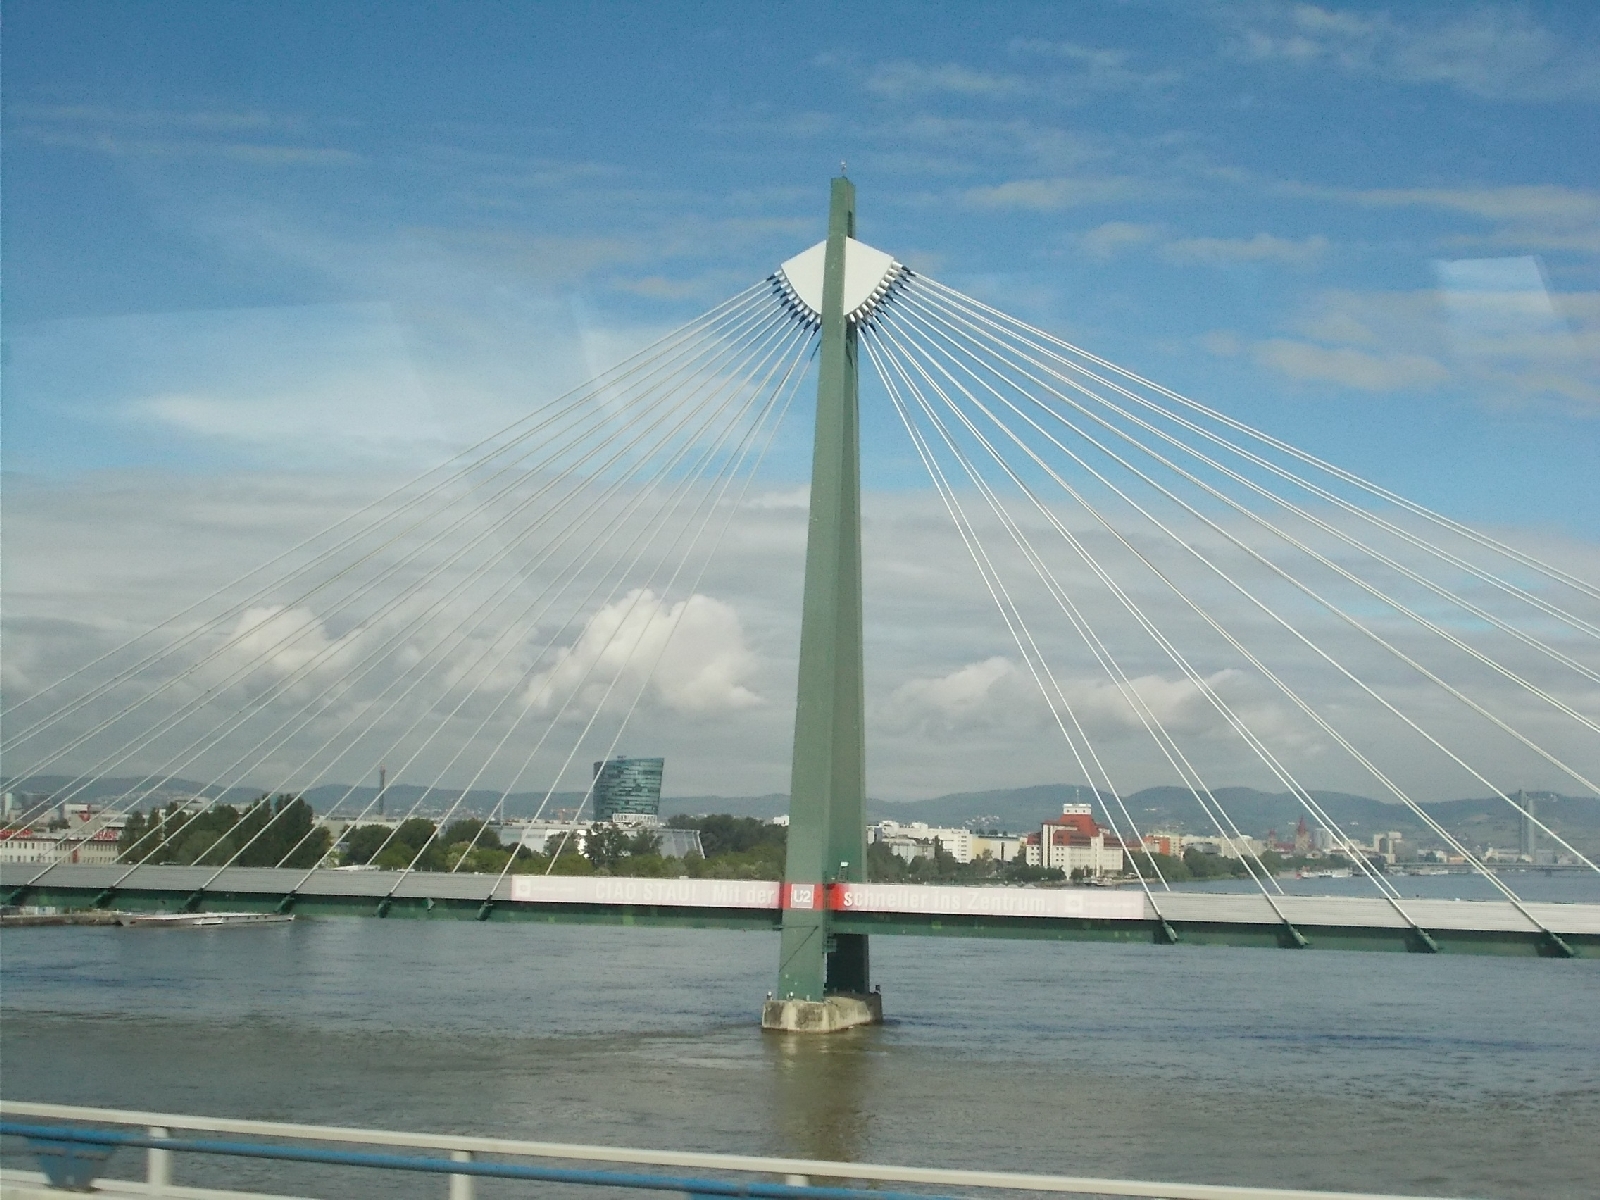 Lanový most